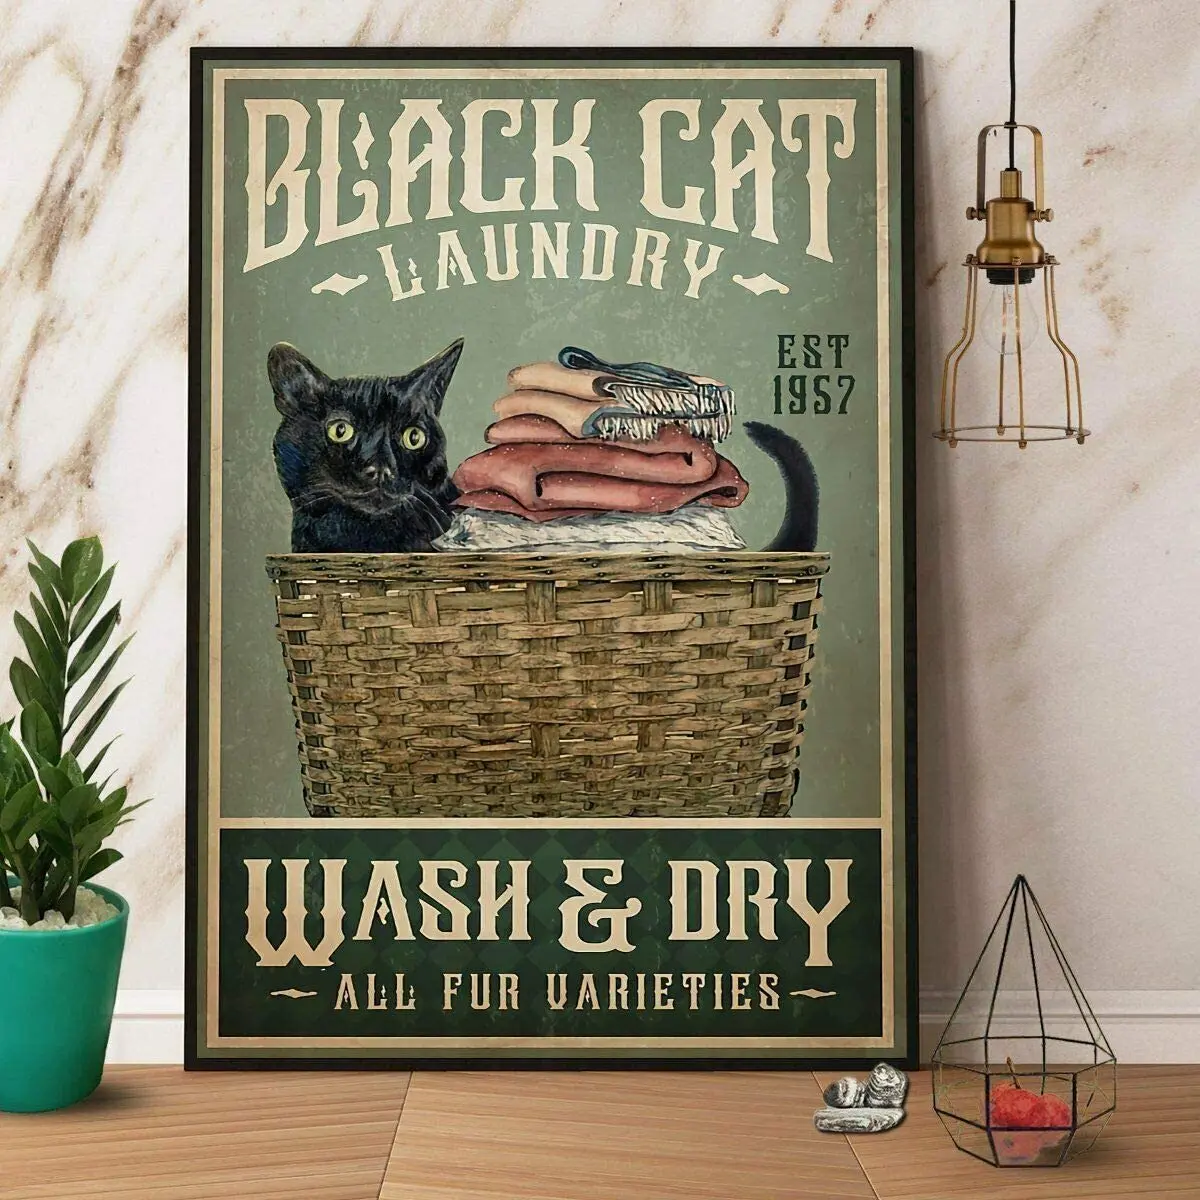 

SIGNCHAT черная кошка стирка и сушка плакат Художественная печать Декор для дома ретро Настенный декор металлический знак плакат 8x12 дюймов